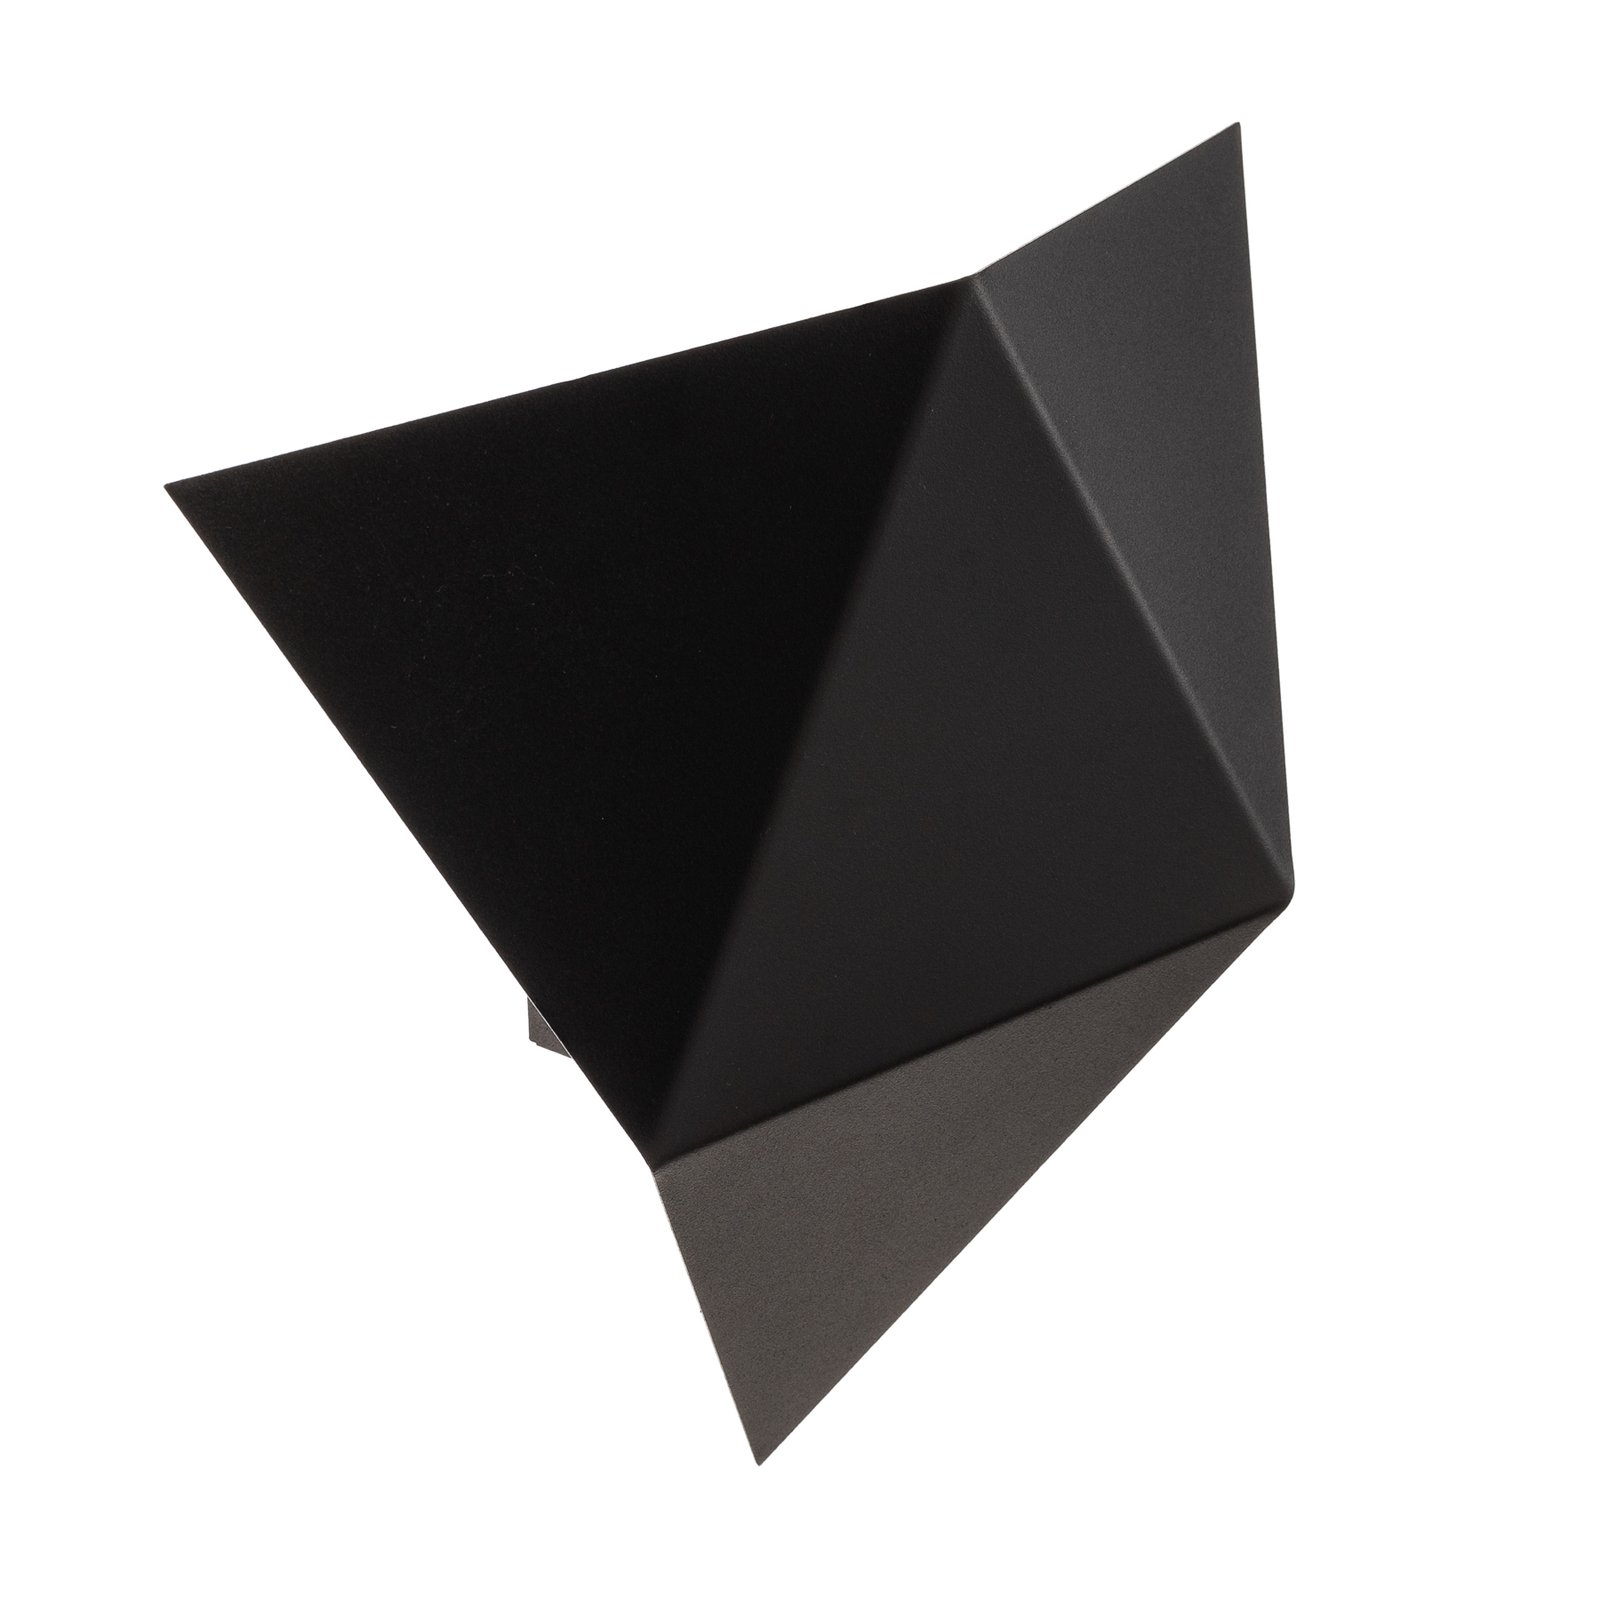 Shield angular wall lamp, black